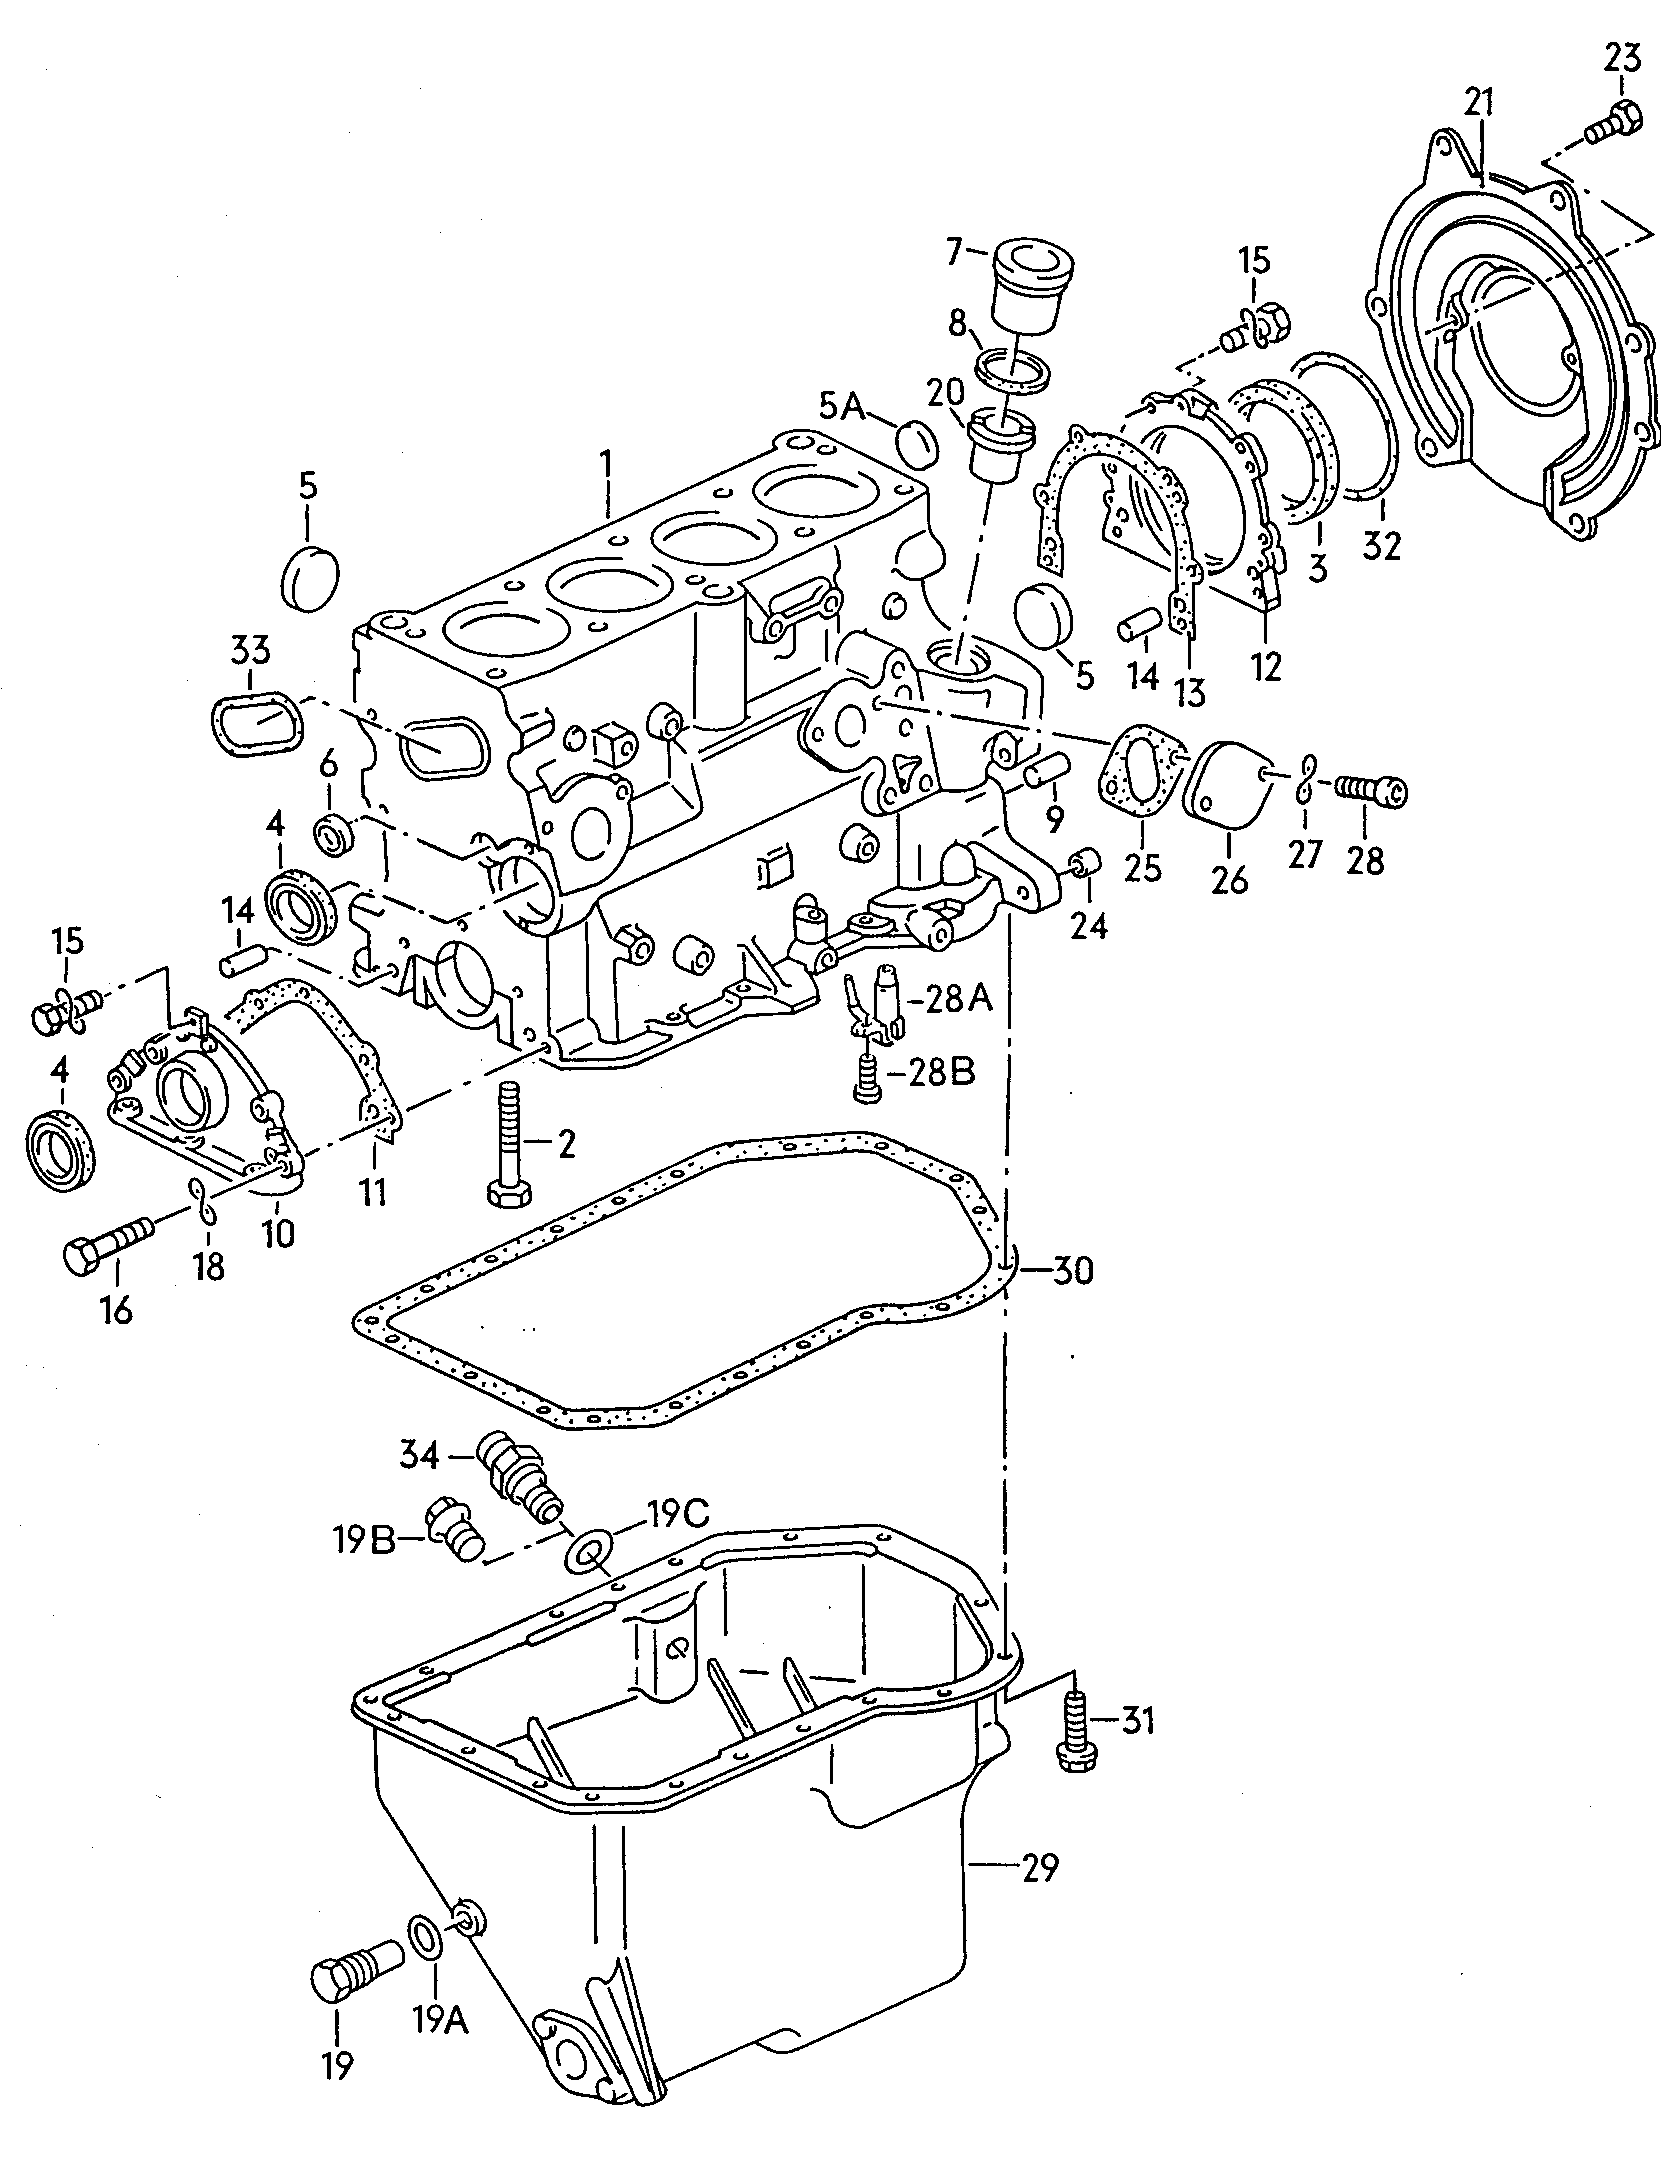 Befestigungsteile für Motor<br>und Getriebe  - Typ 2/syncro - t2